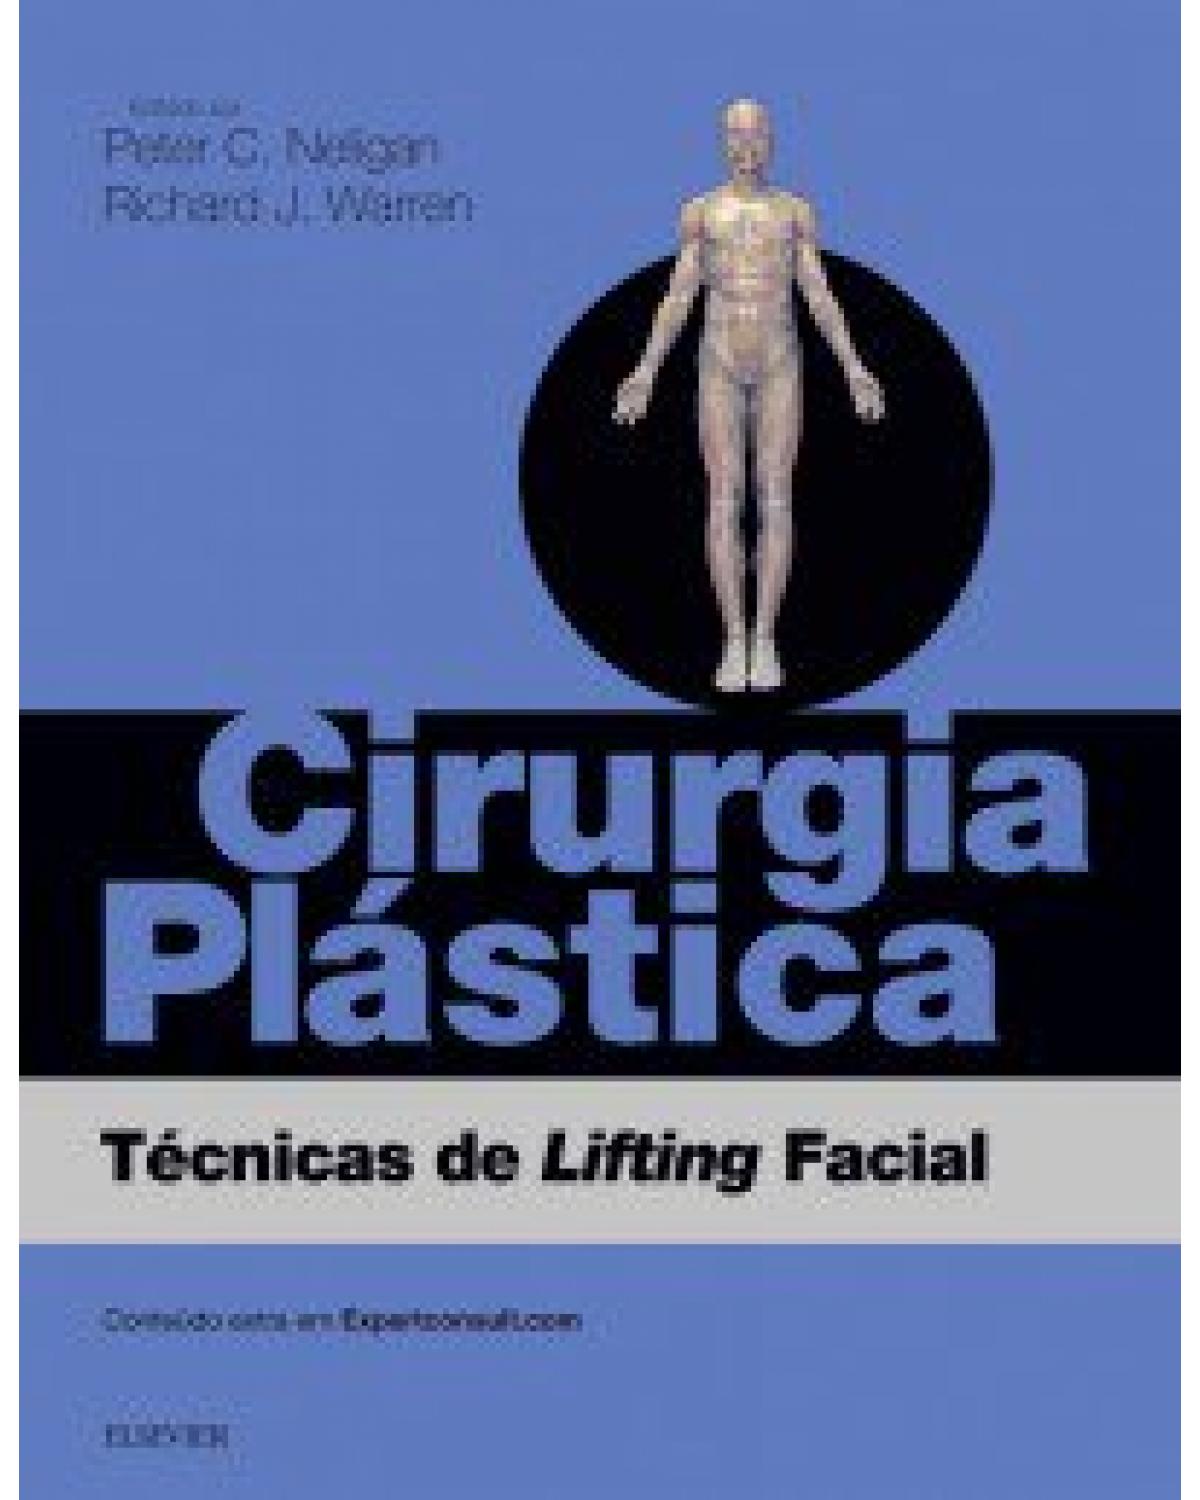 Cirurgia plástica - técnicas de lifting facial - 3ª Edição | 2017